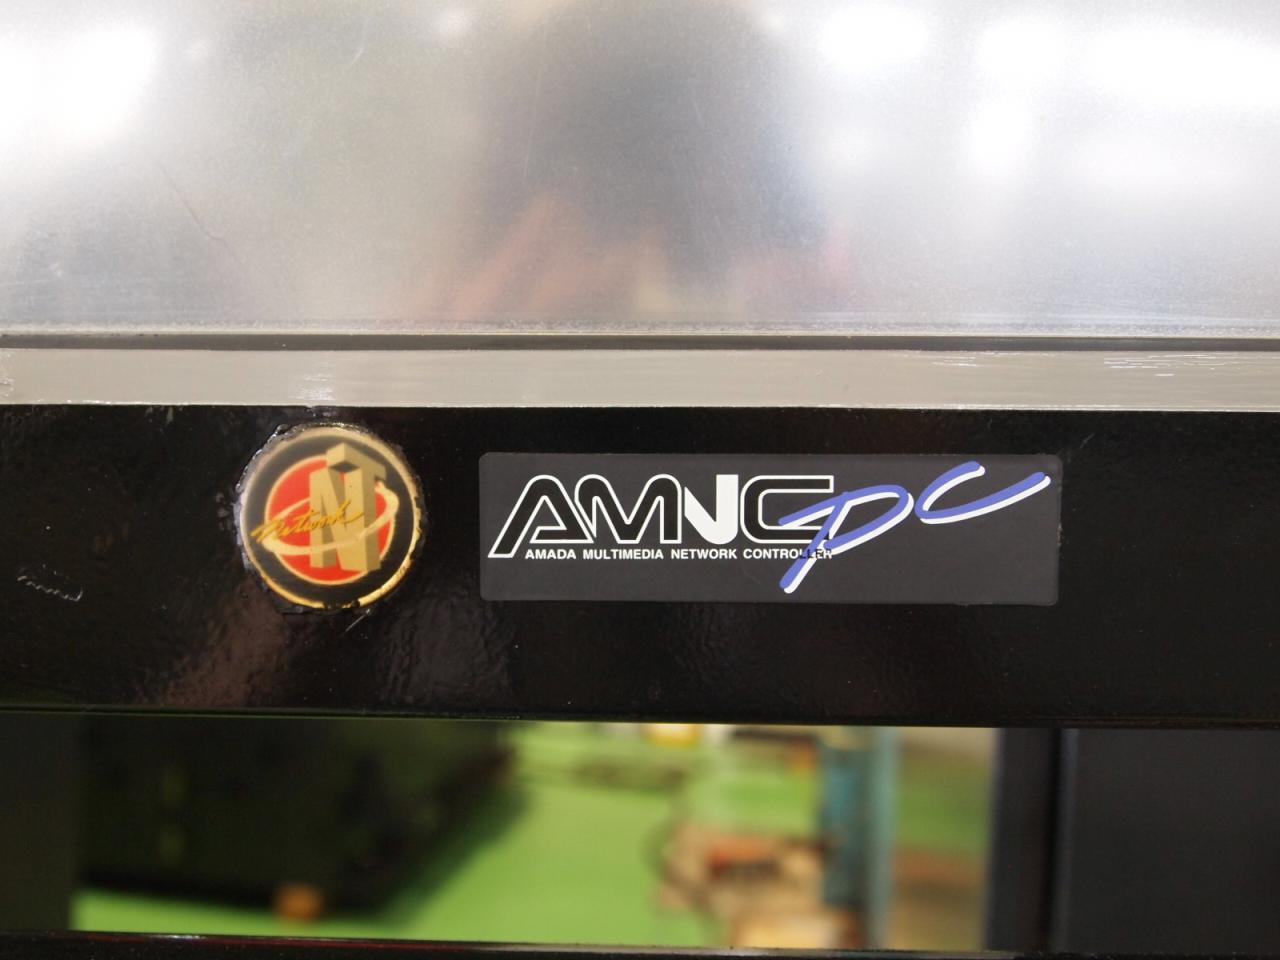 AMNCPC型式ロゴ表示